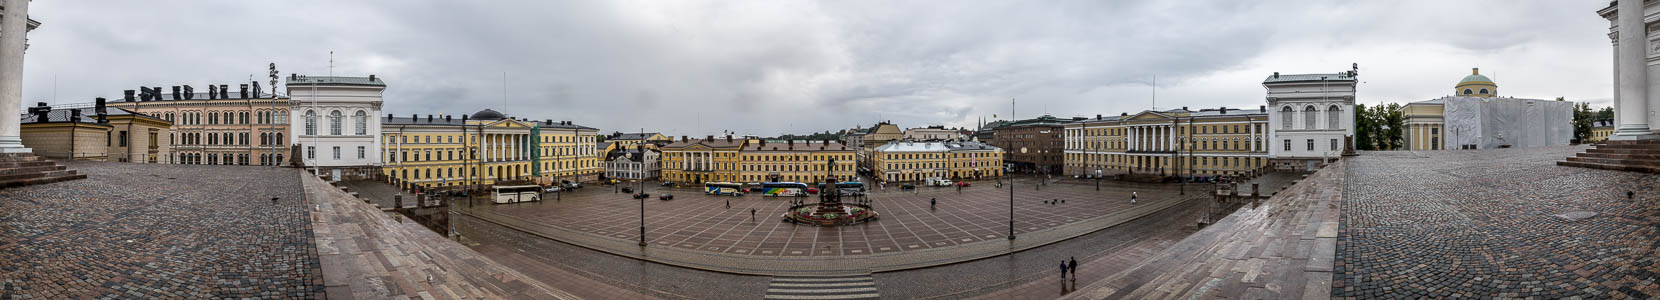 Kruununhaka (Kronohagen): Senatsplatz Helsinki